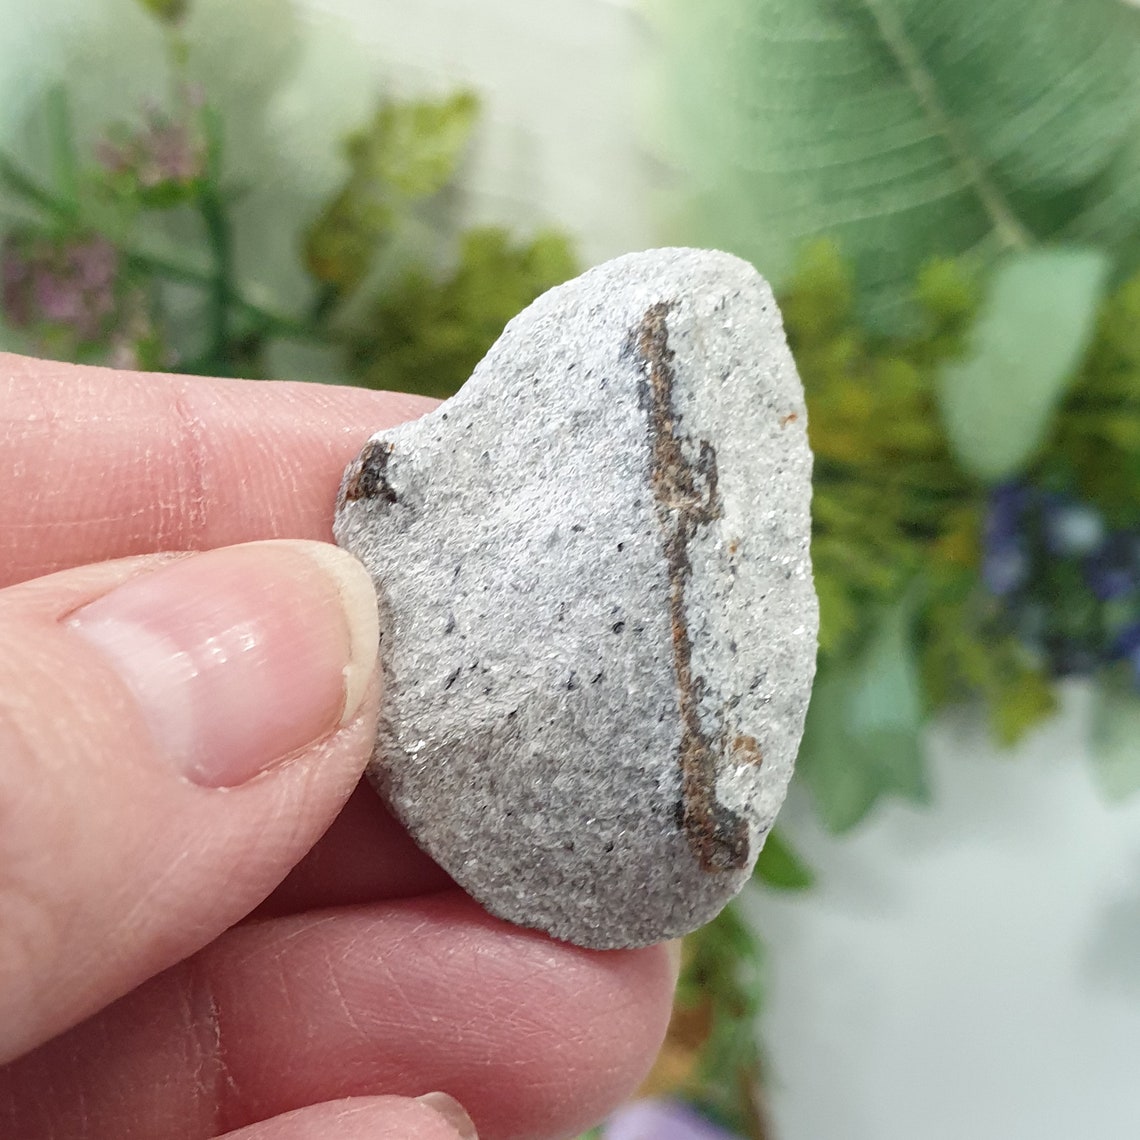 Staurolite Fairy Stone Crystal Specimen from Keivy | Etsy